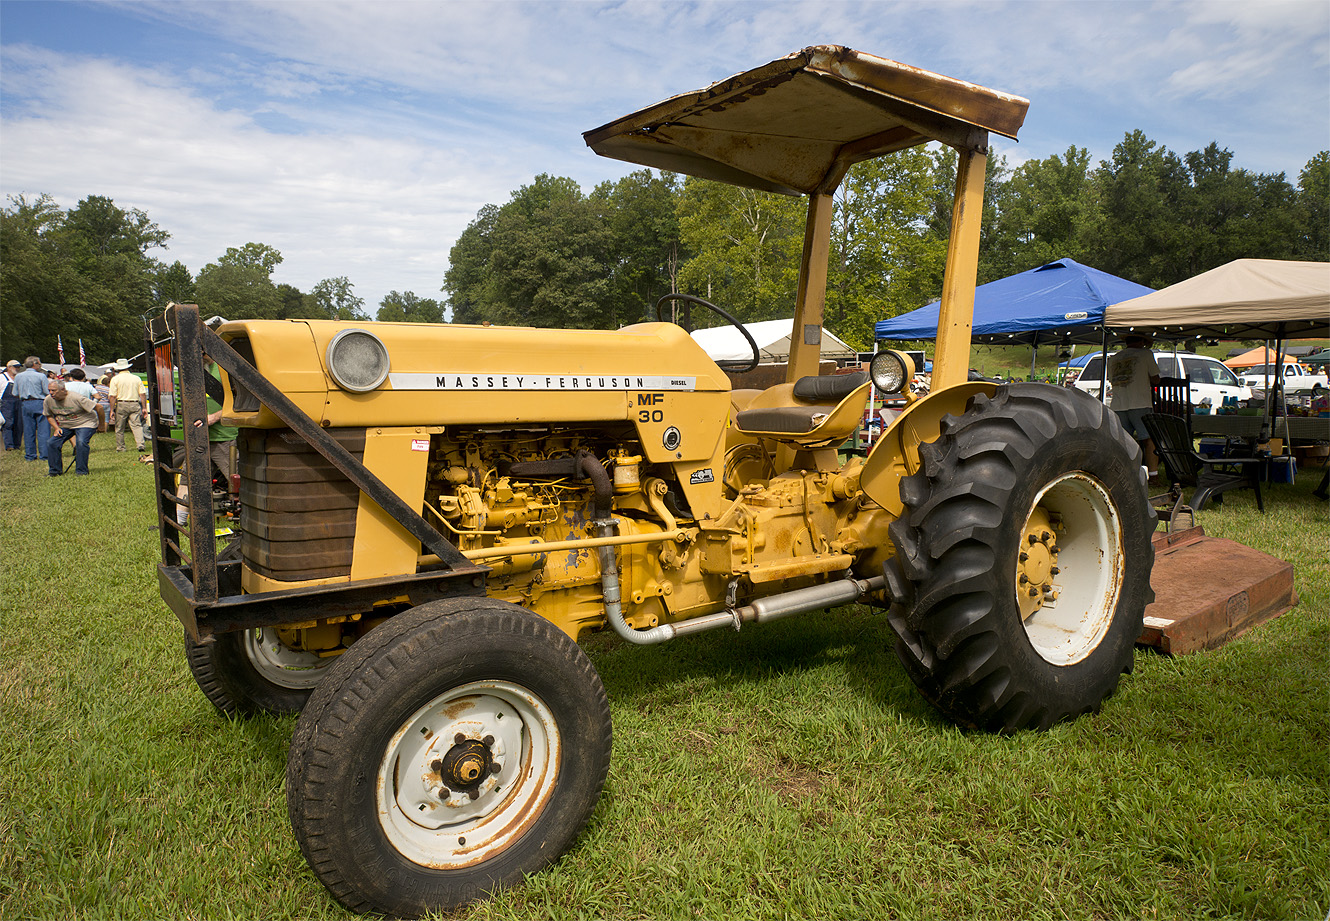 Massey-Ferguson 30 Industrial tractor | Flickr - Photo Sharing!